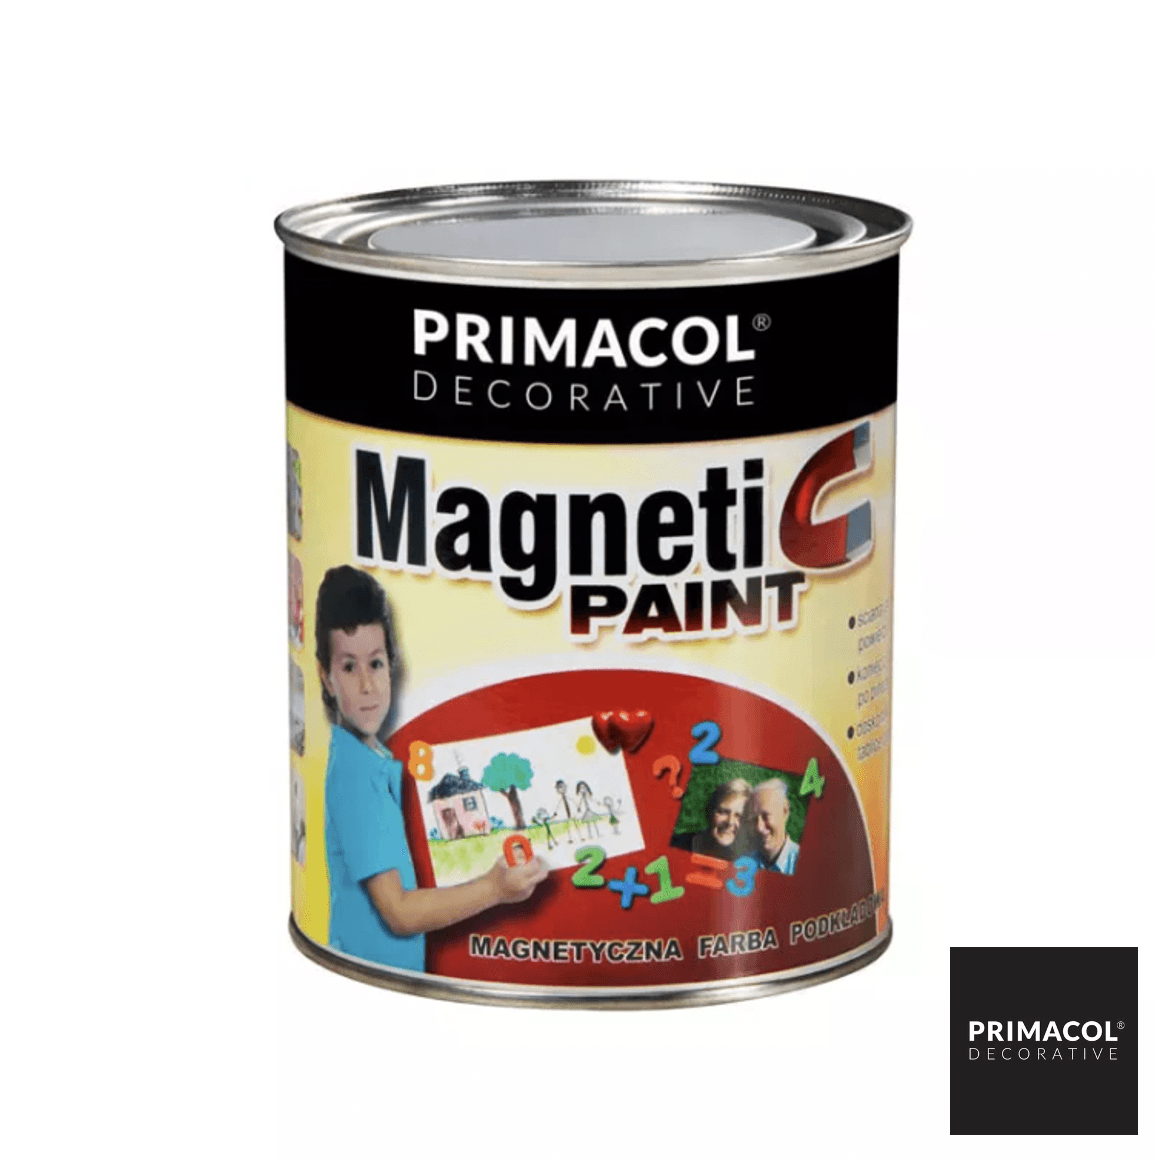 Magnetic Paint - Primacol Ireland - Decorative Paint 